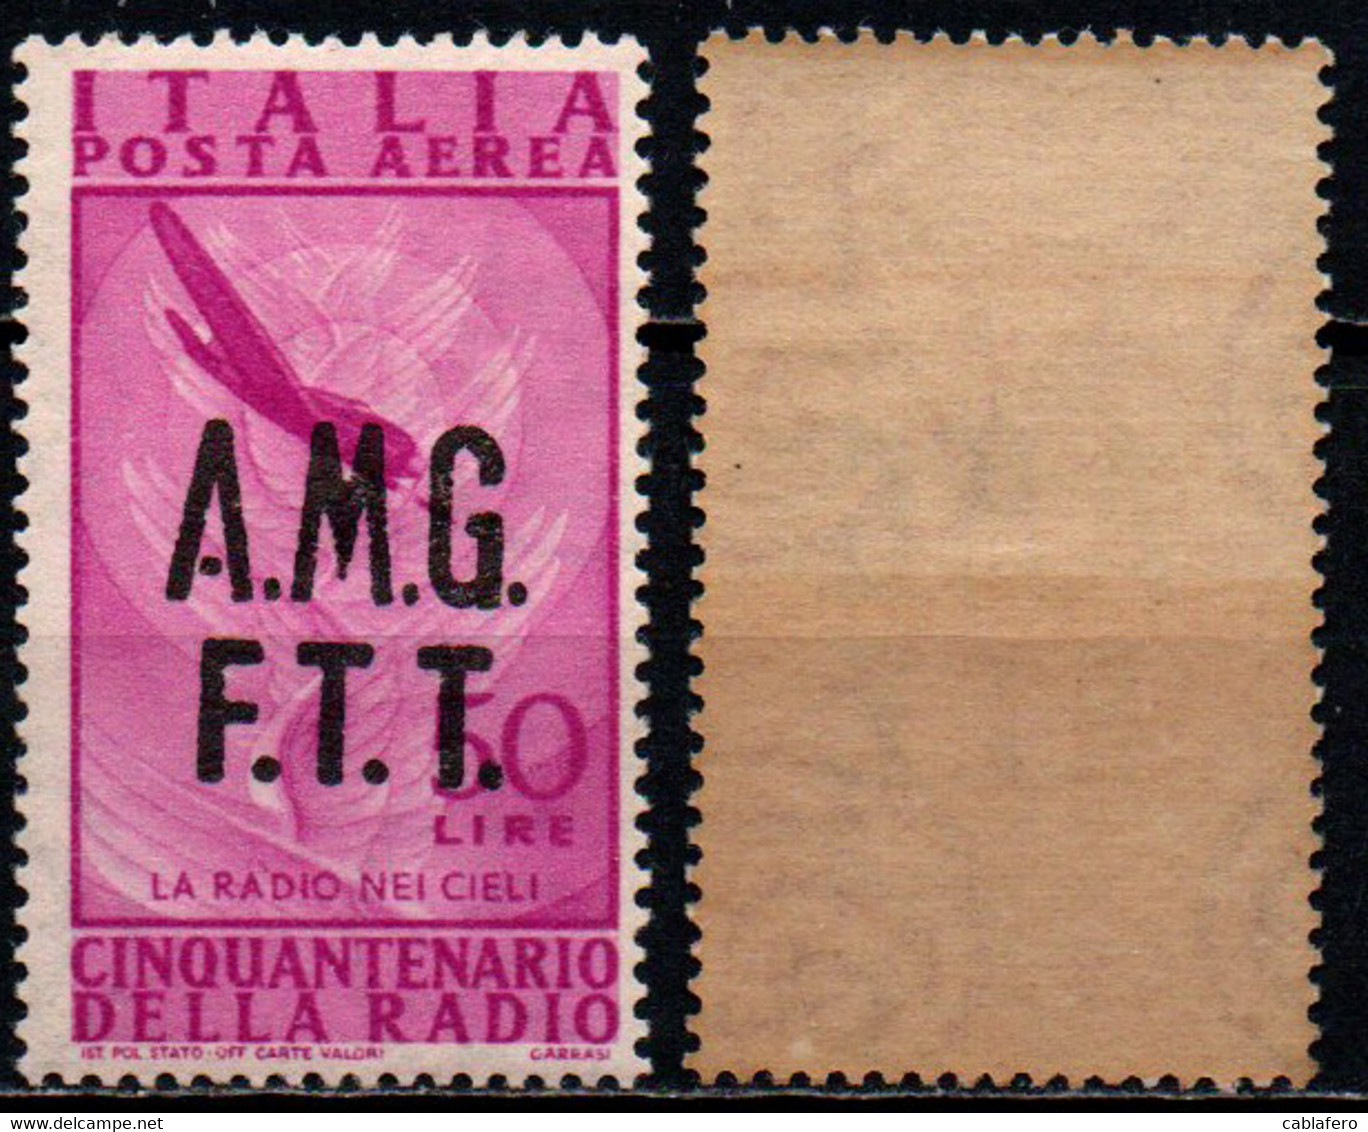 TRIESTE - AMGFTT - 1947 - CINQUANTENARIO DELLA RADIO - 50 LIRE - SOVRASTAMPA SU DUE RIGHE - GOMMA BICOLORE - MNH - Airmail